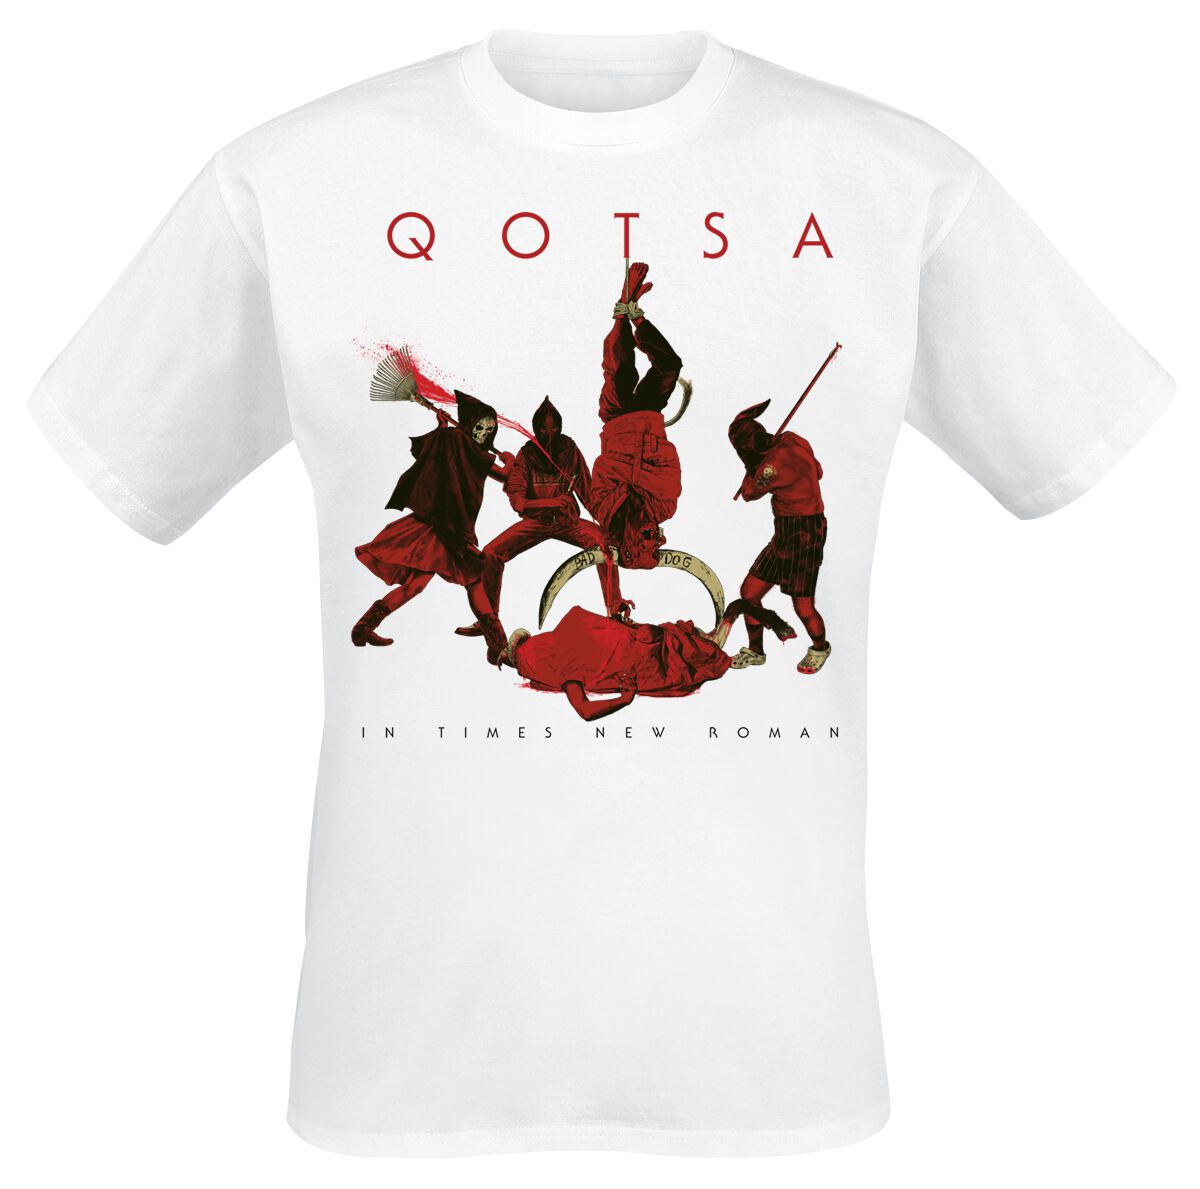 Queens Of The Stone Age T-Shirt - In Times New Roman - Emotion Sickness - S bis 3XL - für Männer - Größe M - weiß  - Lizenziertes Merchandise!